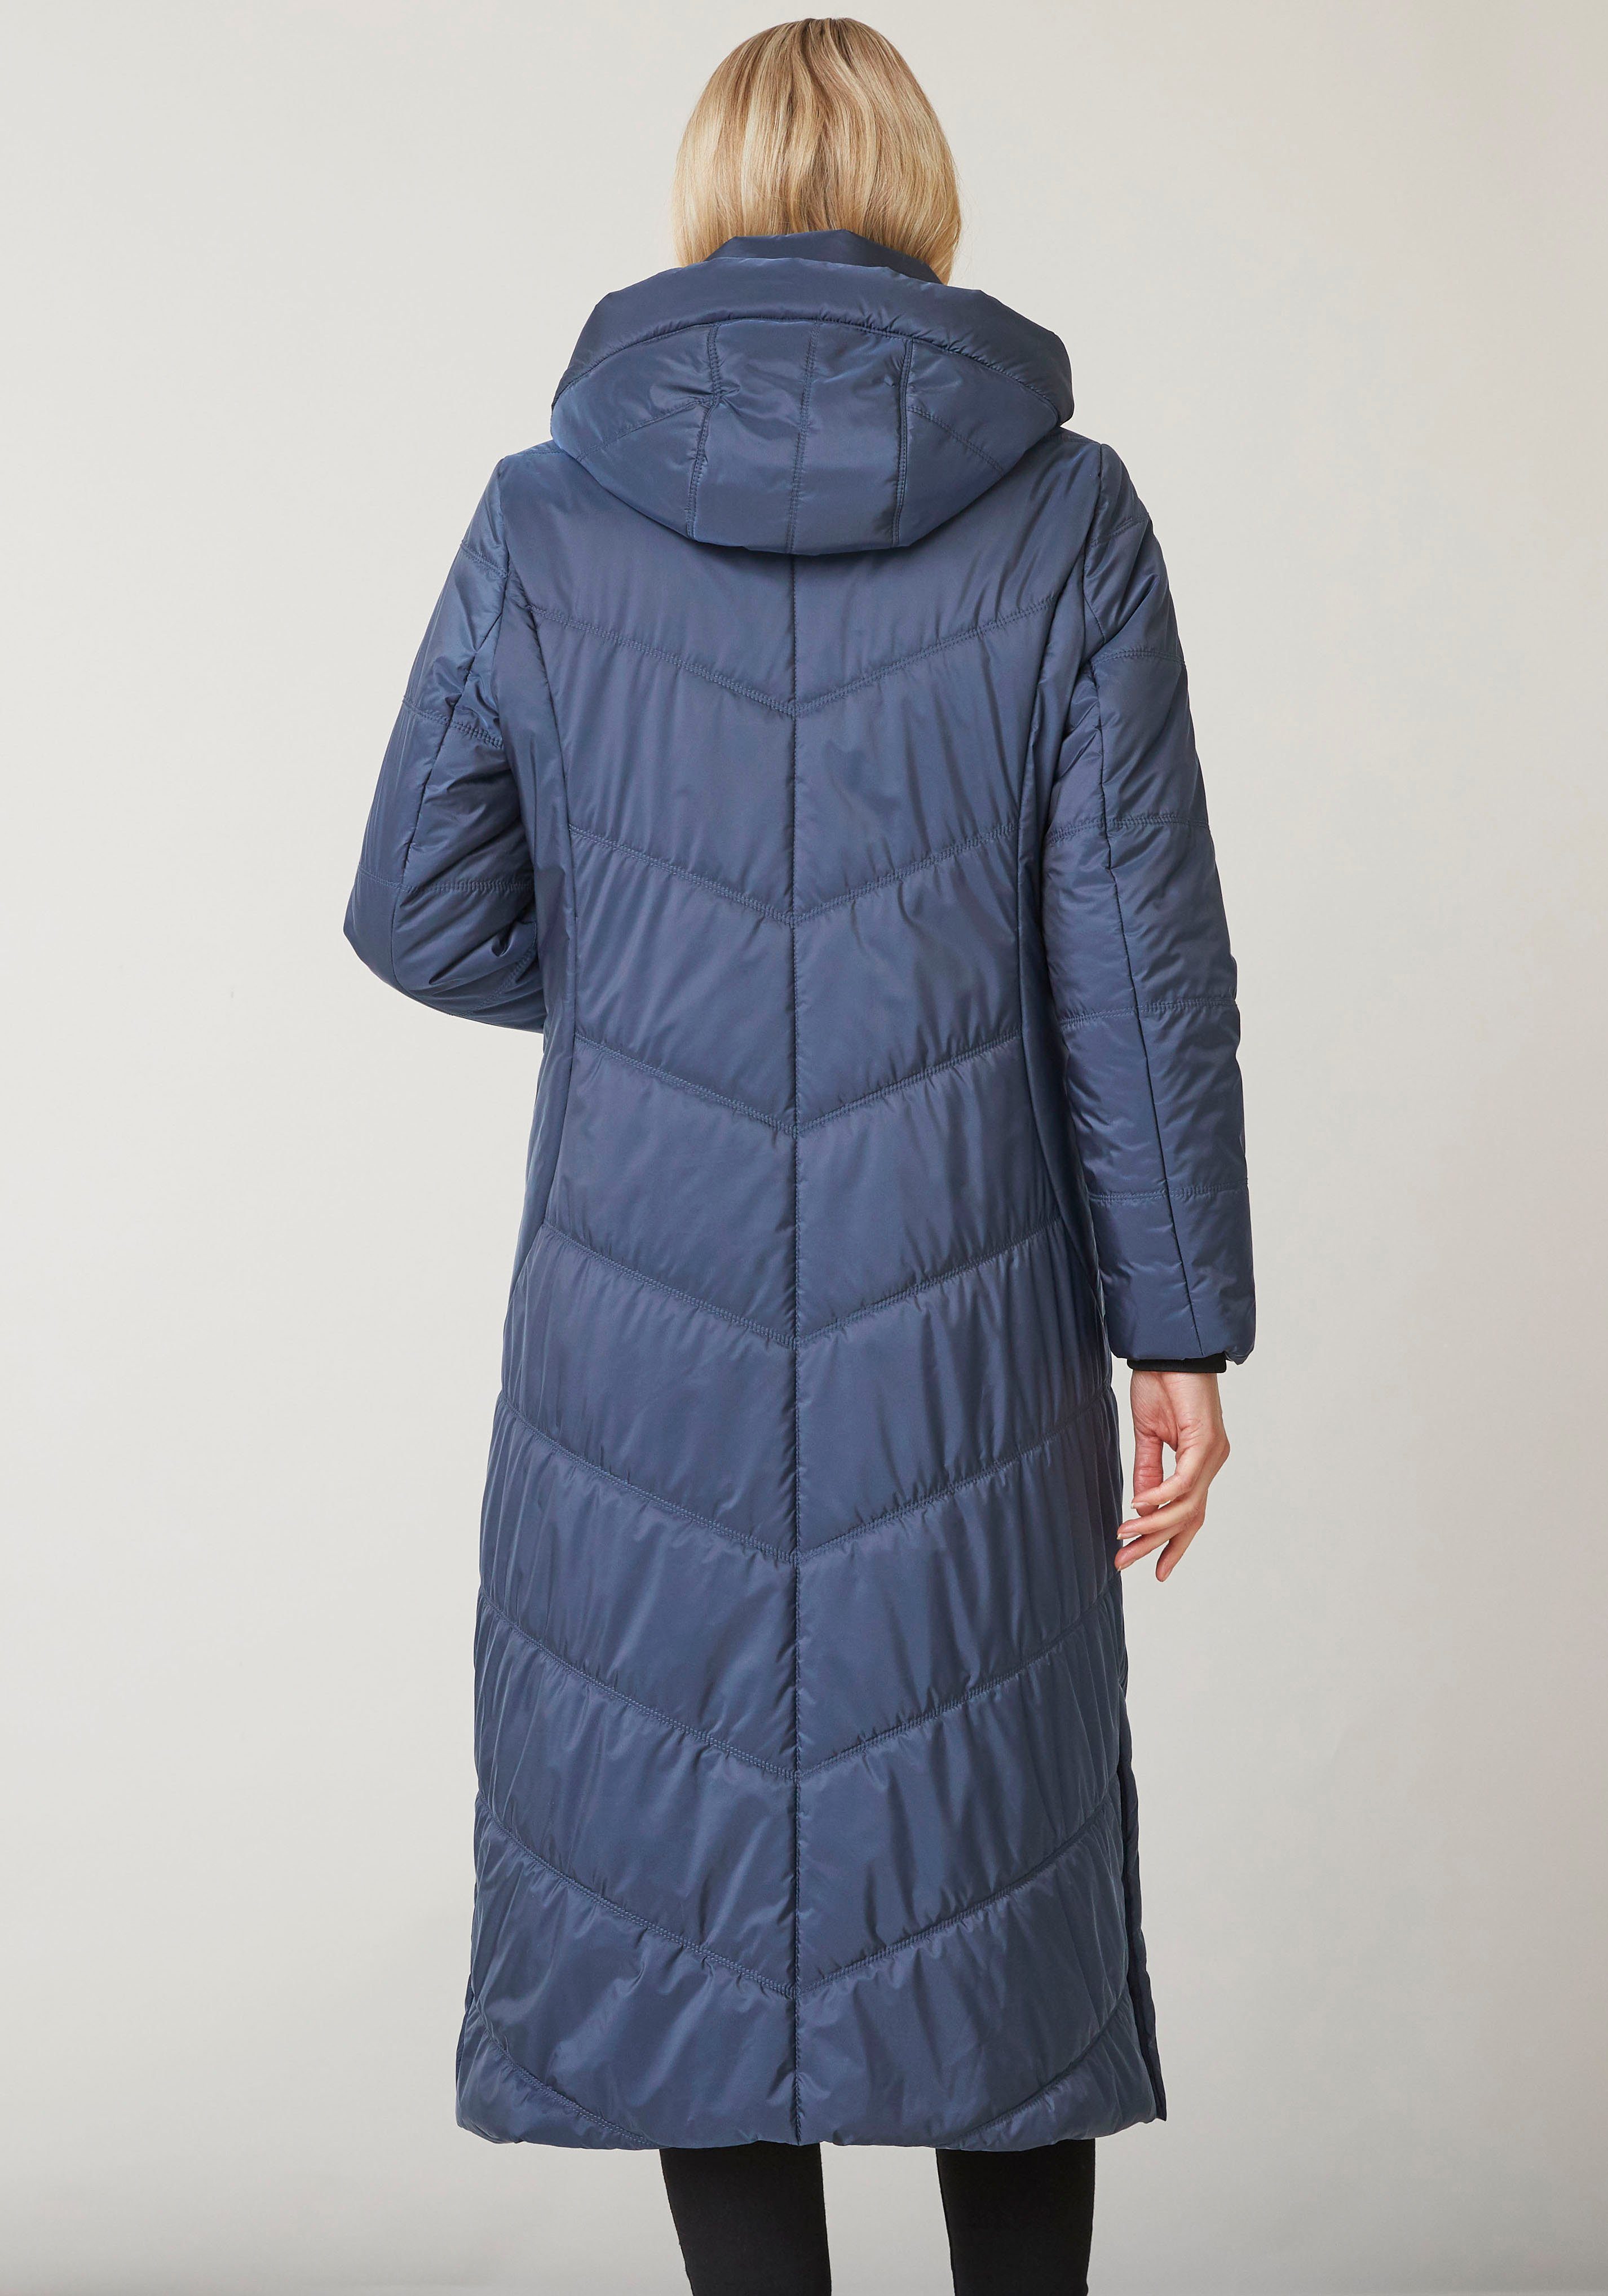 Junge Danmark Winterjacke Ina mit seitlichen Reißverschlusstaschen blue midnight